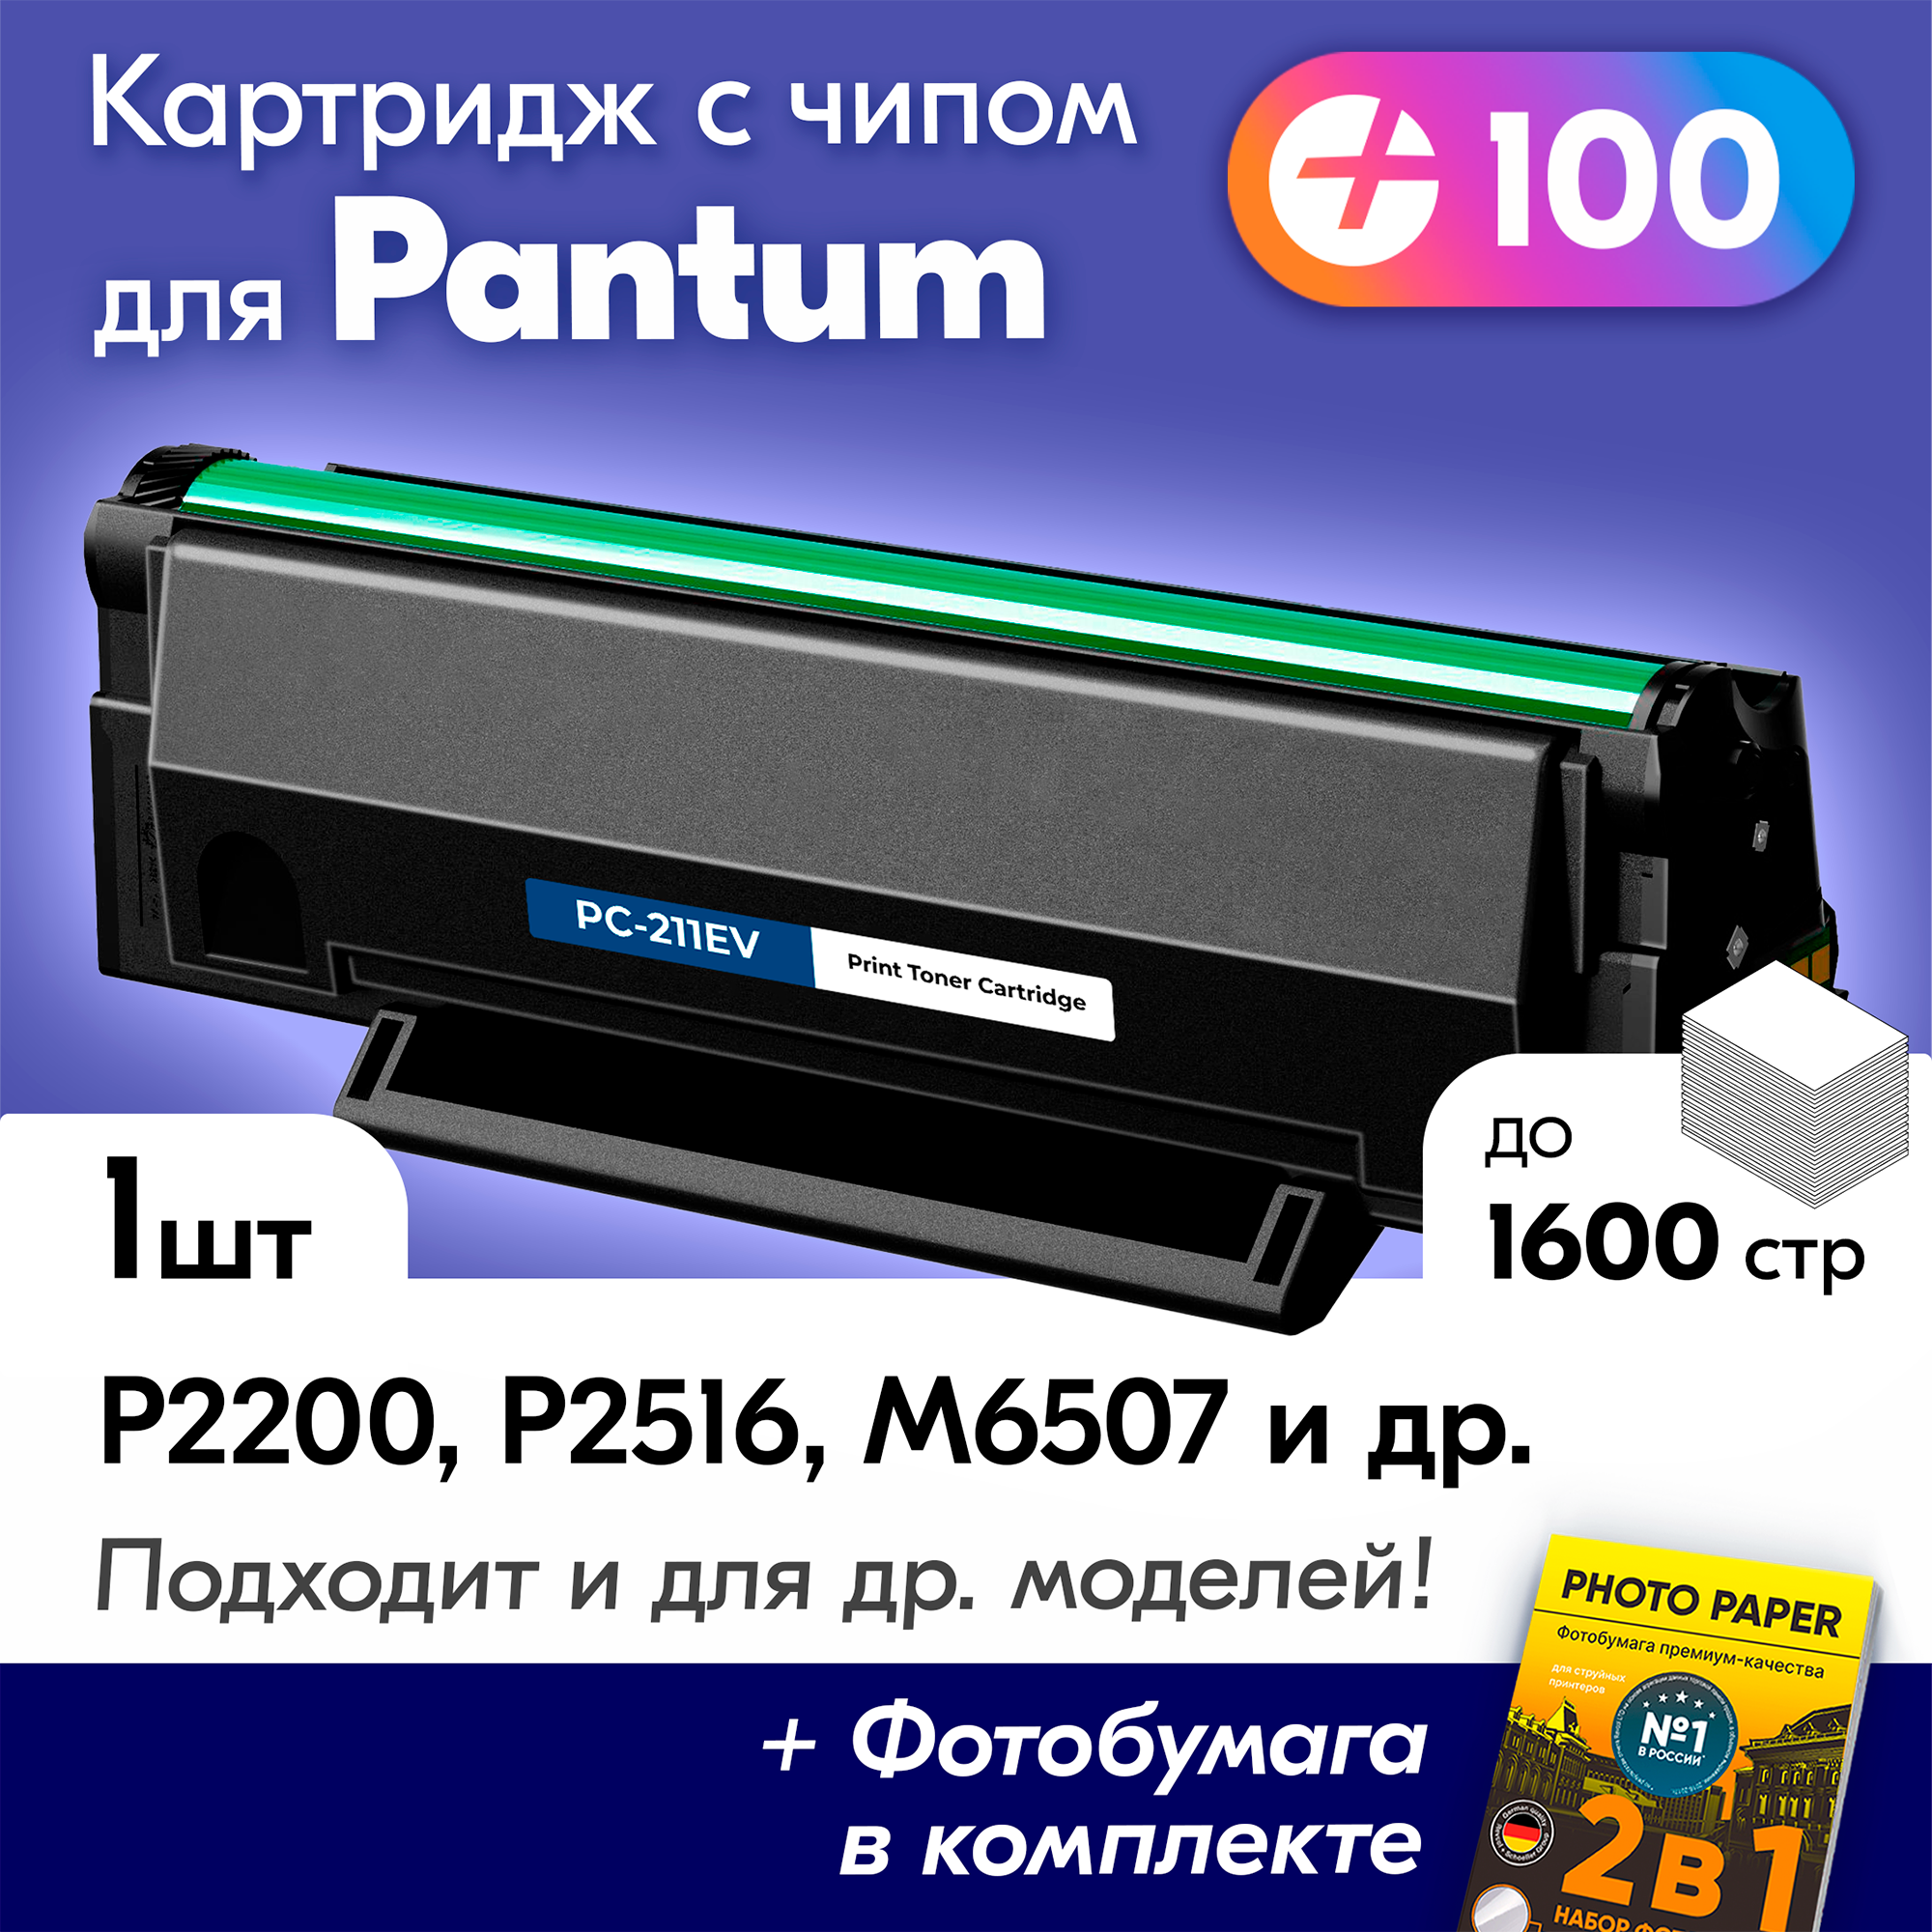 Лазерный картридж для Pantum PC-211EV, Pantum M6500W, M6500, M6507W, M6550NW, P2207, P2500W с краской (тонером) черный новый заправляемый, 1600 копий